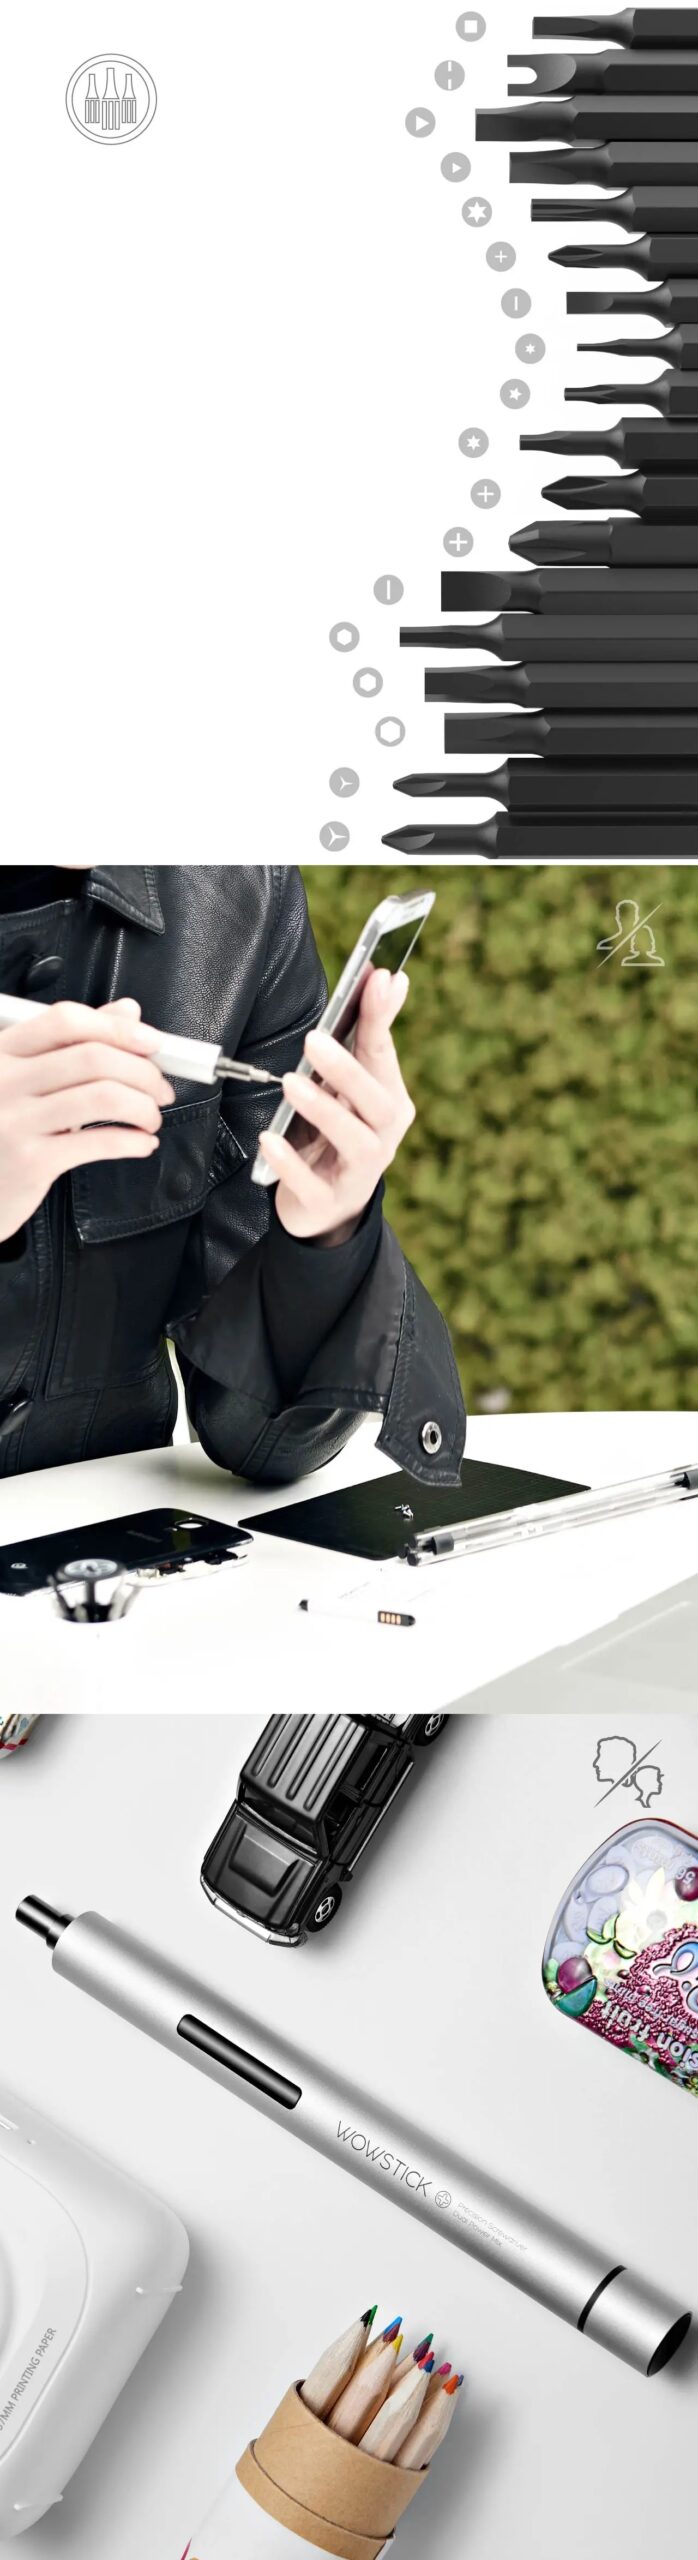 Original Wowstick 1p+ Try Electric Screwdriver 20 Bits Aluminium Body For DIY Tools Kit for Phone Repair